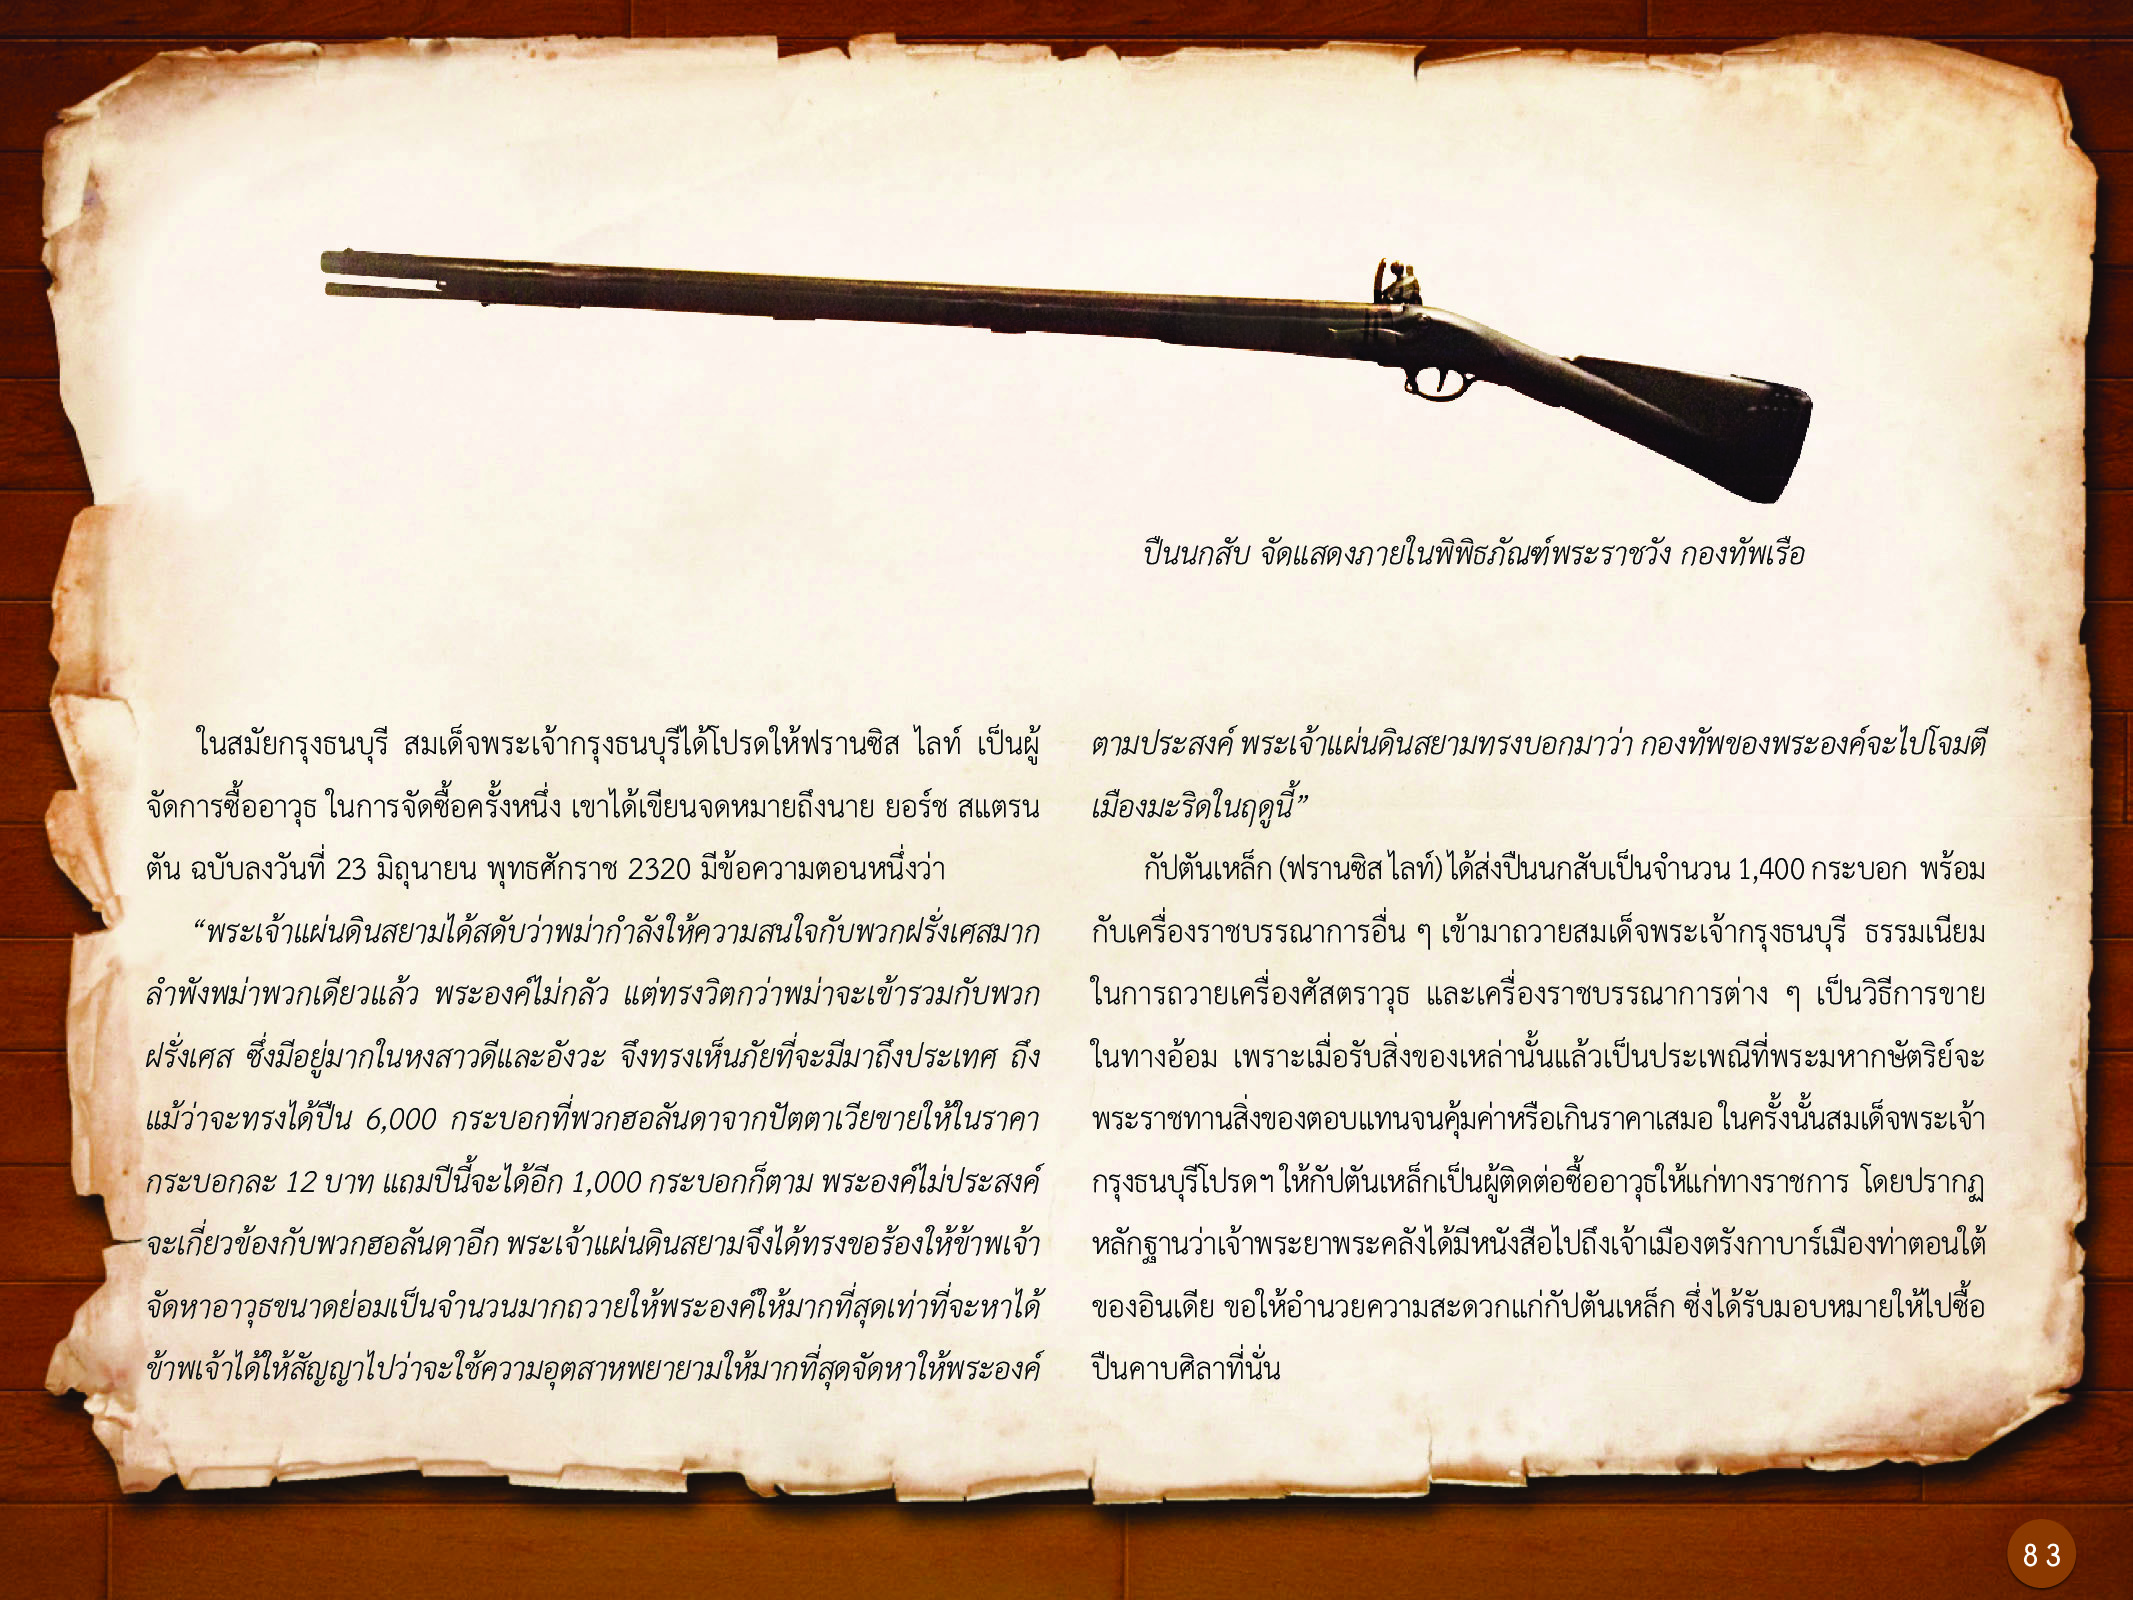 ประวัติศาสตร์กรุงธนบุรี ./images/history_dhonburi/83.jpg